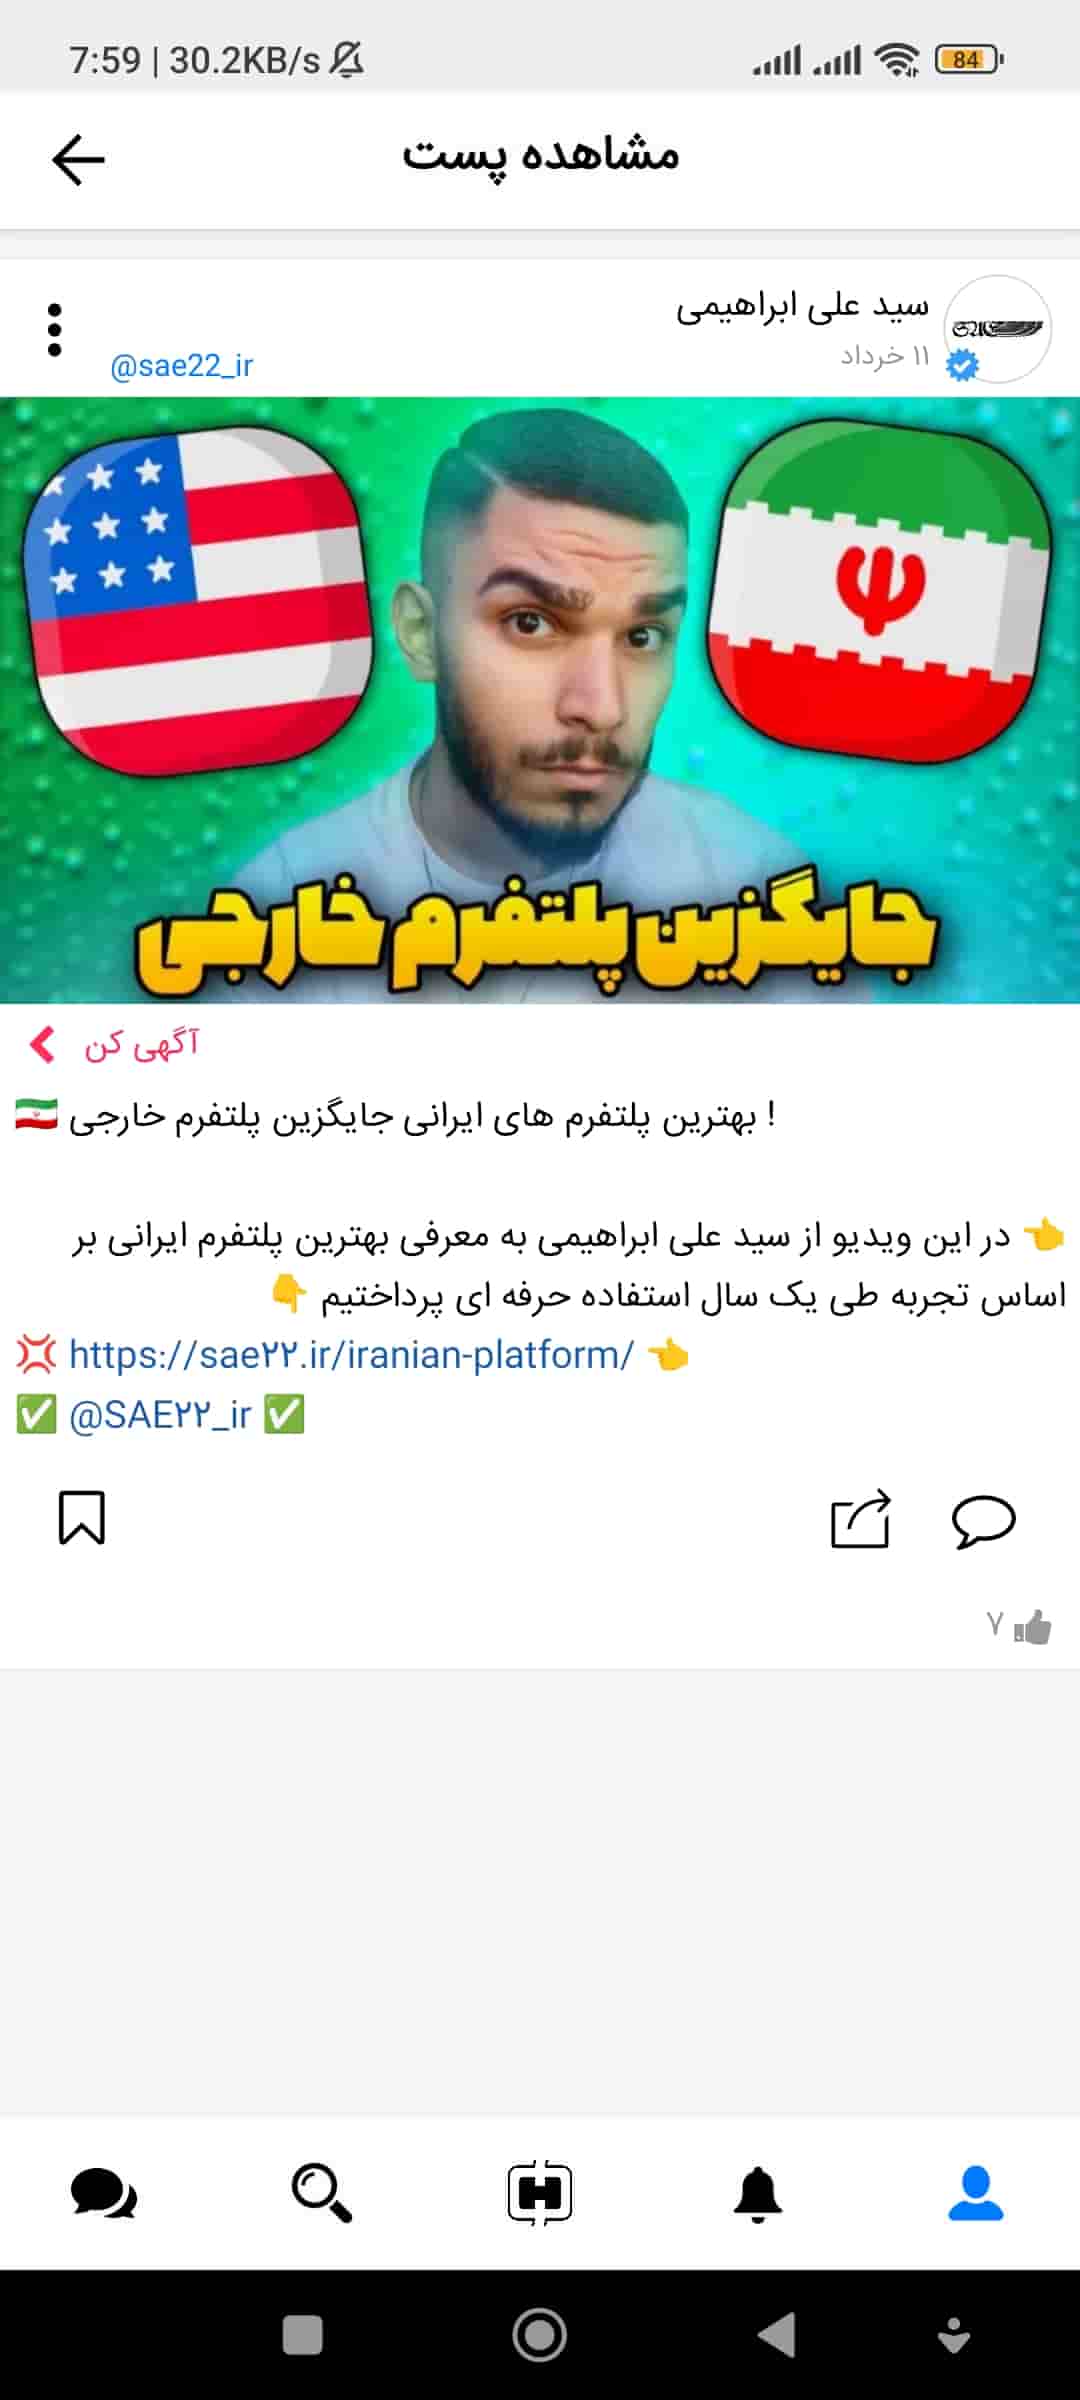 هورسا : شبکه اجتماعی ایرانی ! مزایا هورسا چیست ؟ معایب Hoorsa